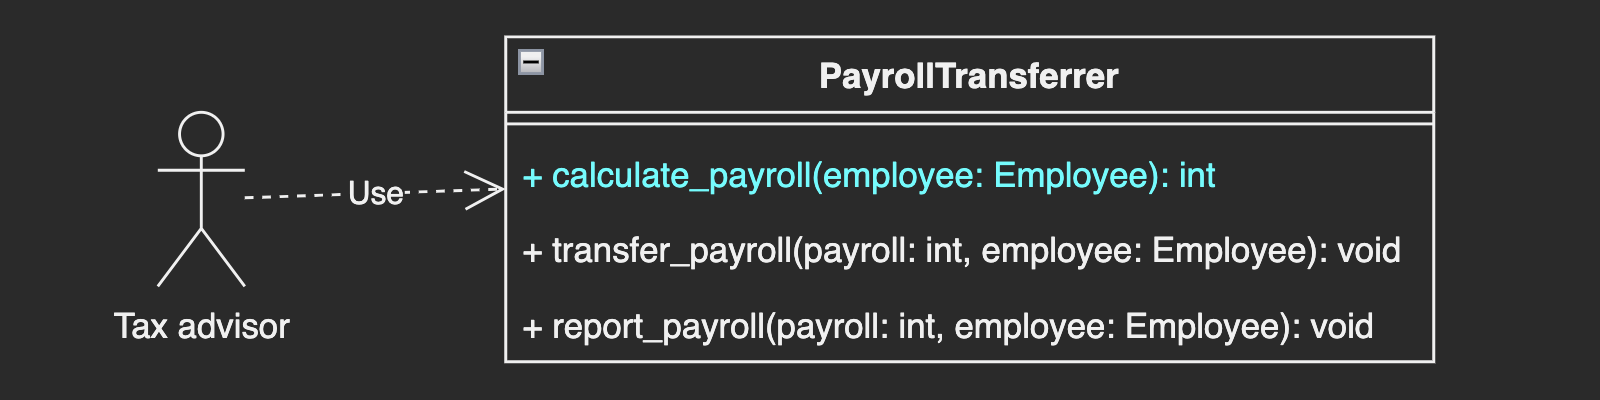 A tax advisor uses calculate_payroll